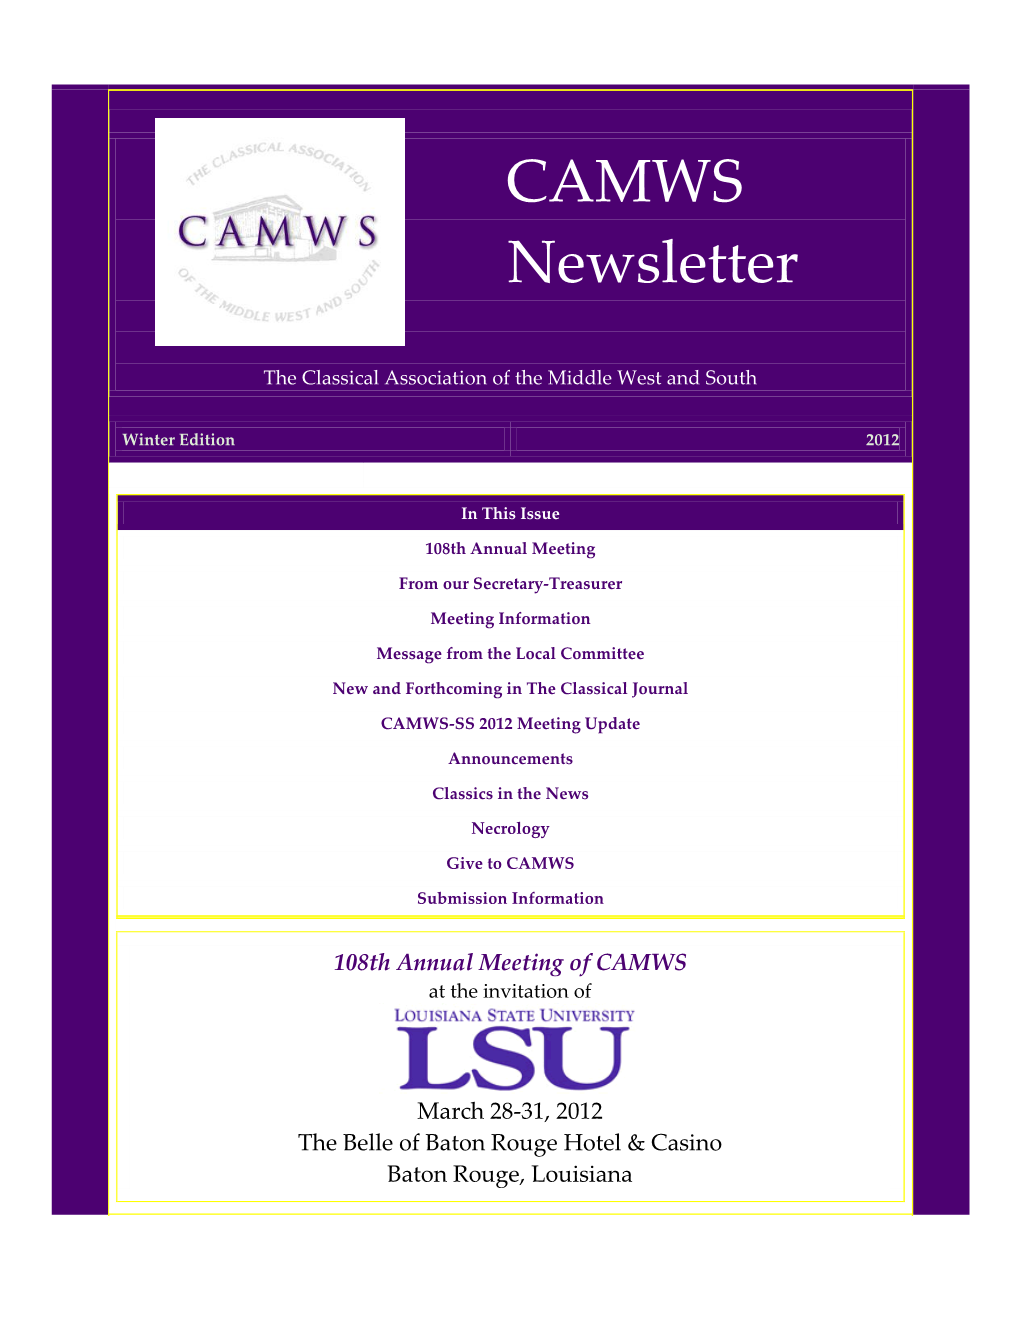 CAMWS Newsletter